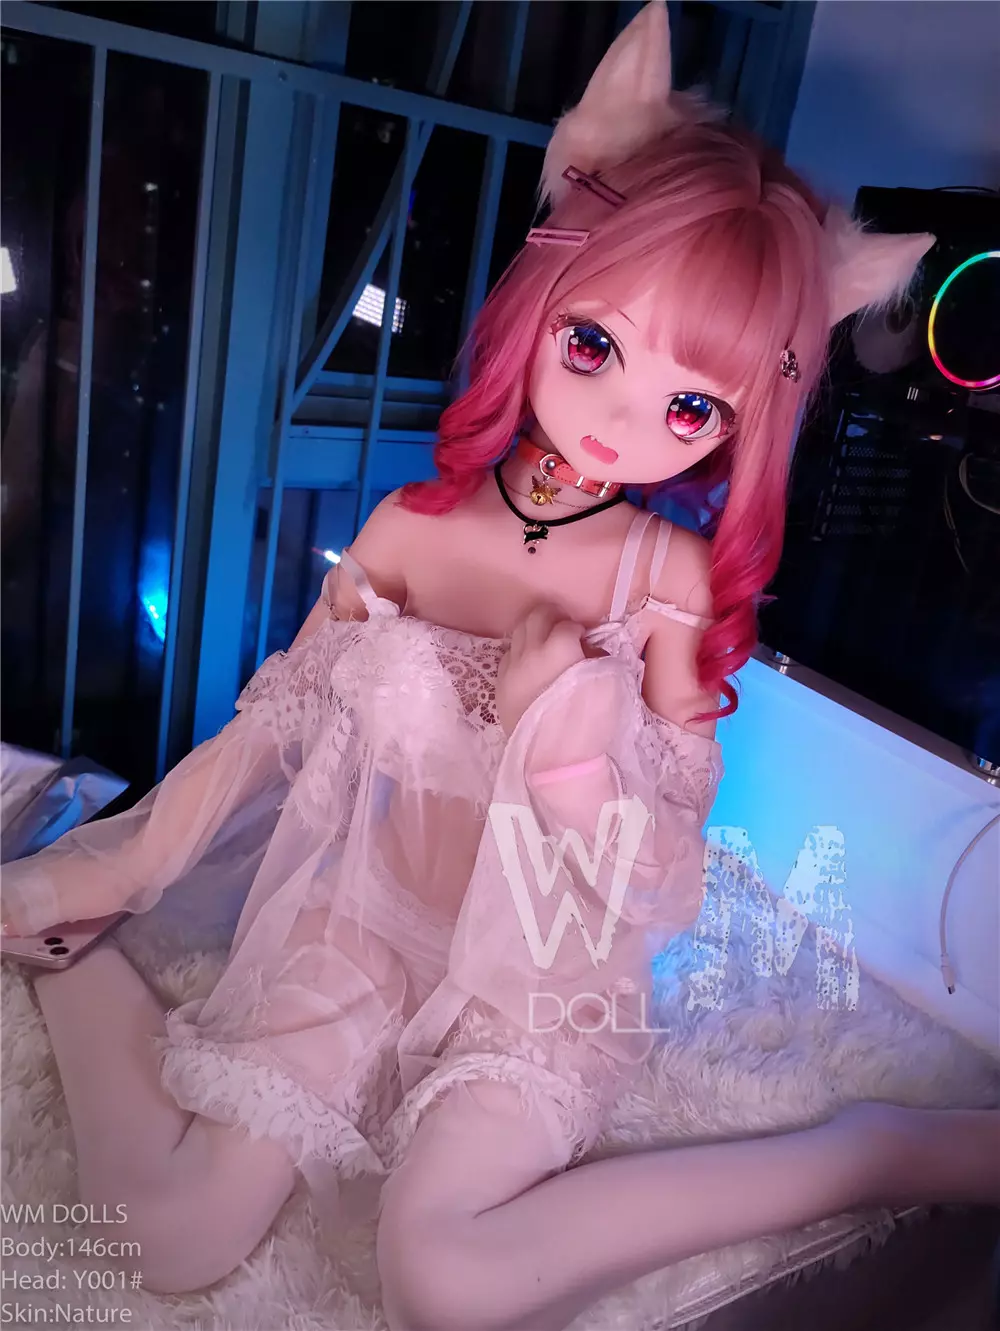 WM S-TPE 146cm Anime Sex Doll with PVC head#Y001